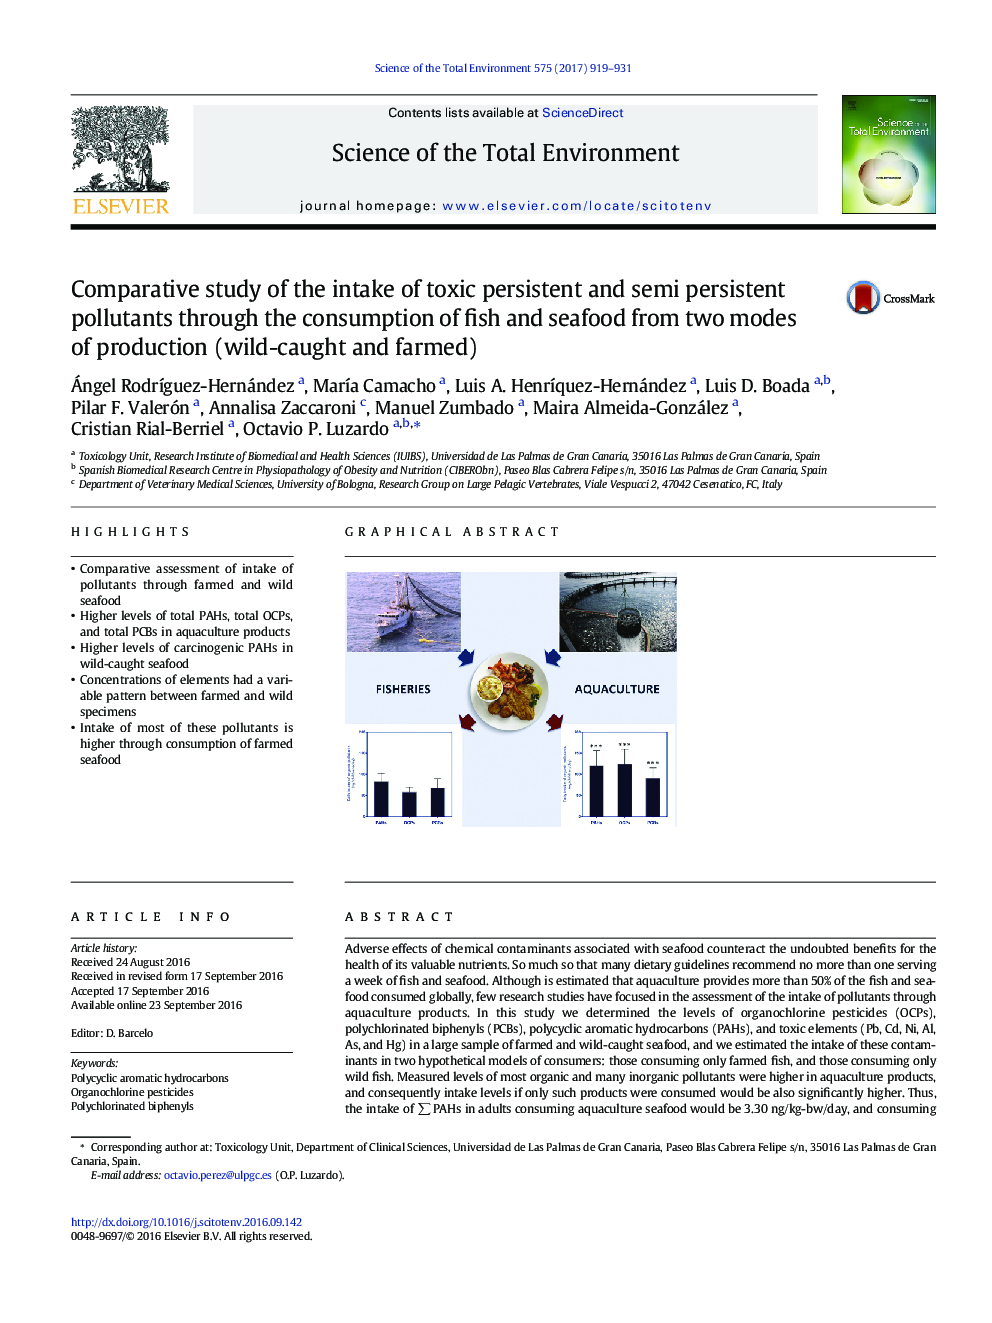 بررسی مقایسه ای مصرف آلاینده های مضر مضر و نیمه پایدار از طریق مصرف ماهی و غذاهای دریایی از دو نوع تولید (وحشی و مزرعه)